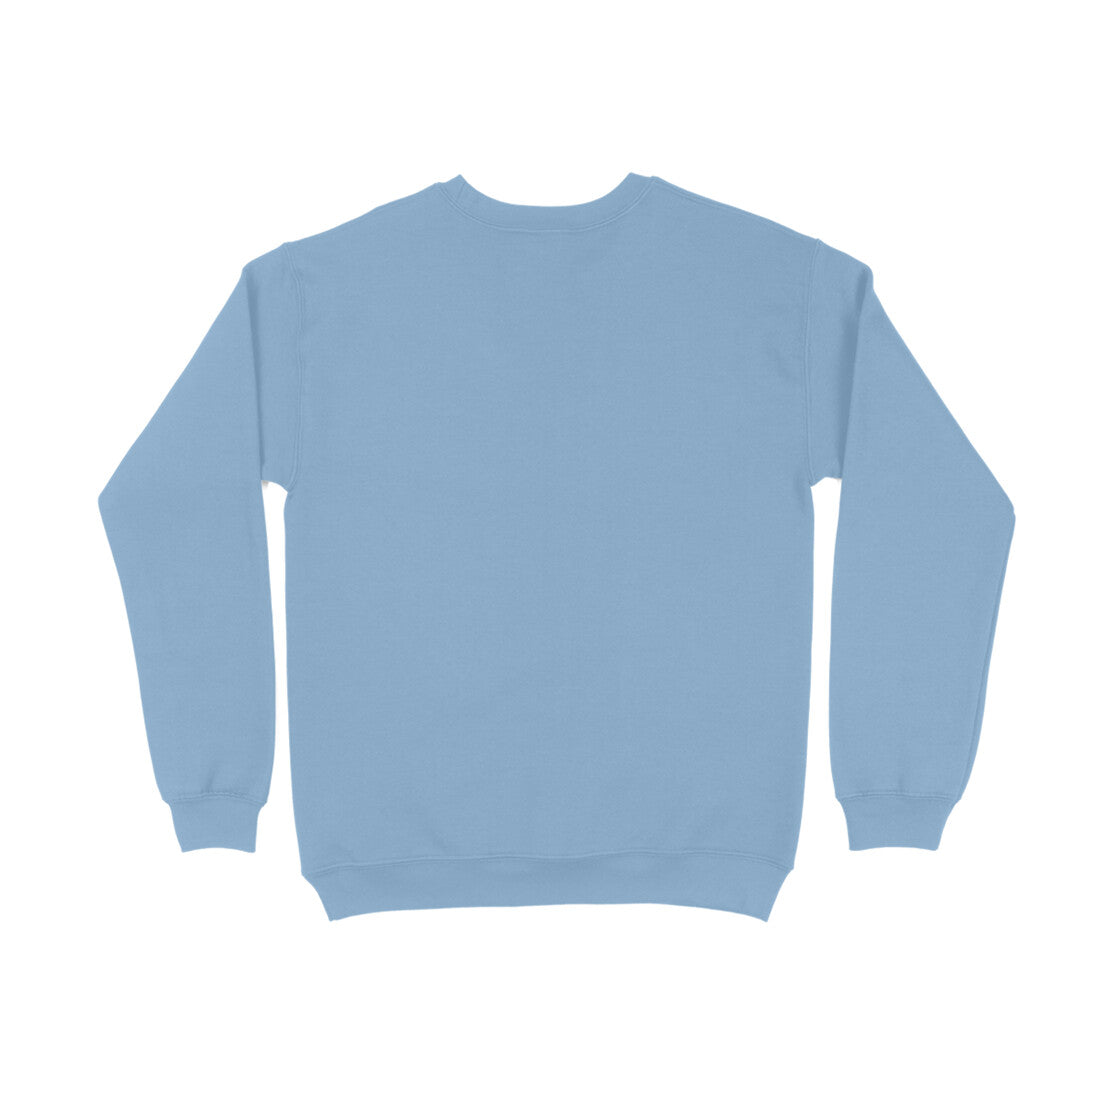 Men's Baby Blue Sweatshirt